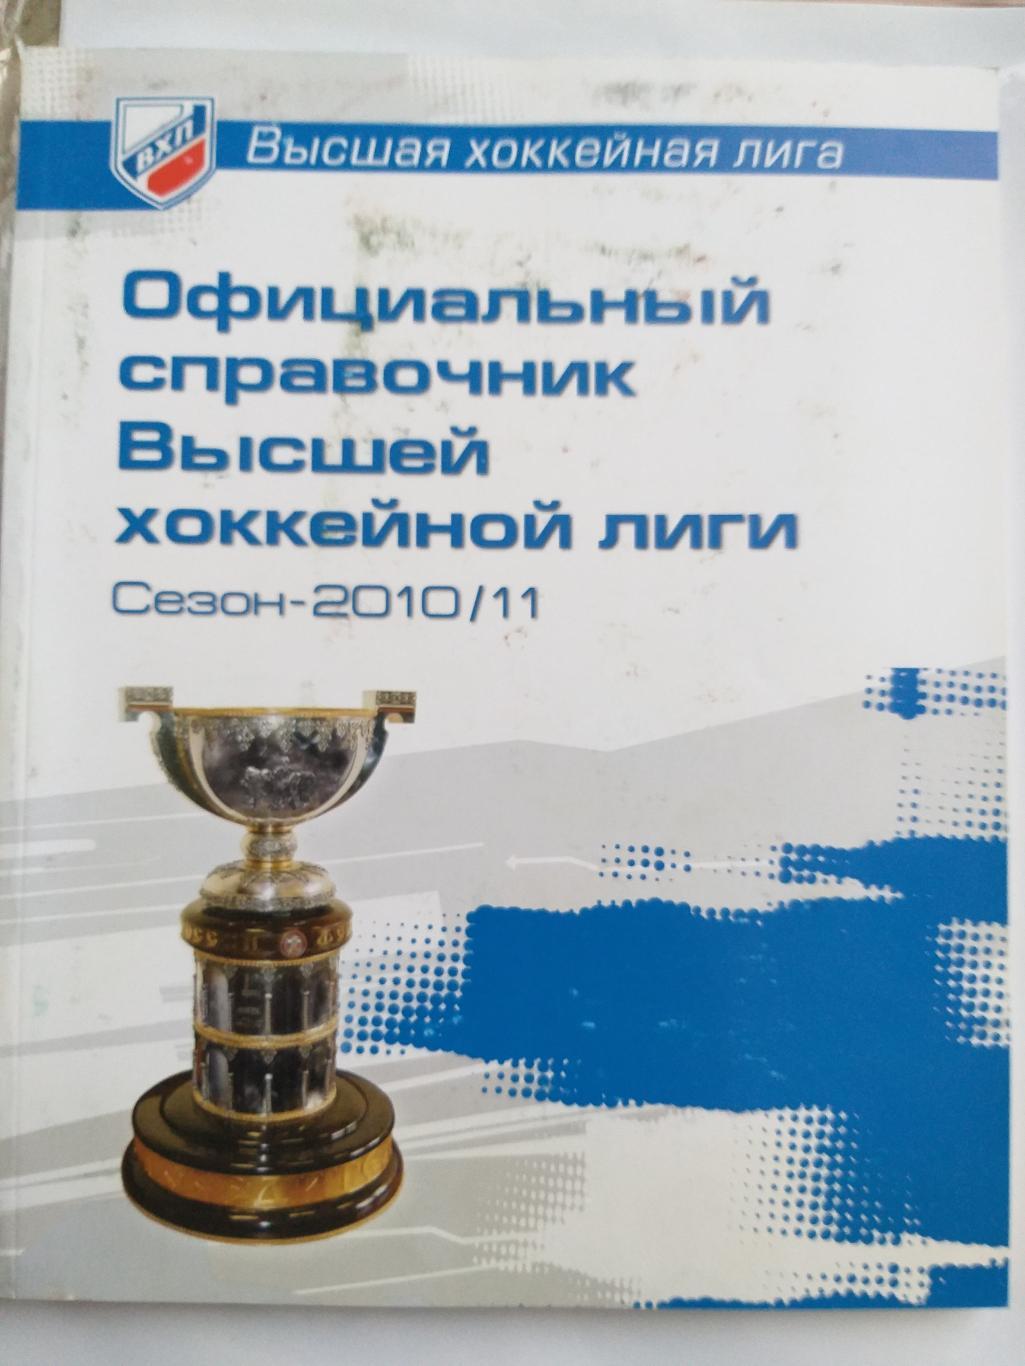 ВХЛ официальный справочник 2010/2011